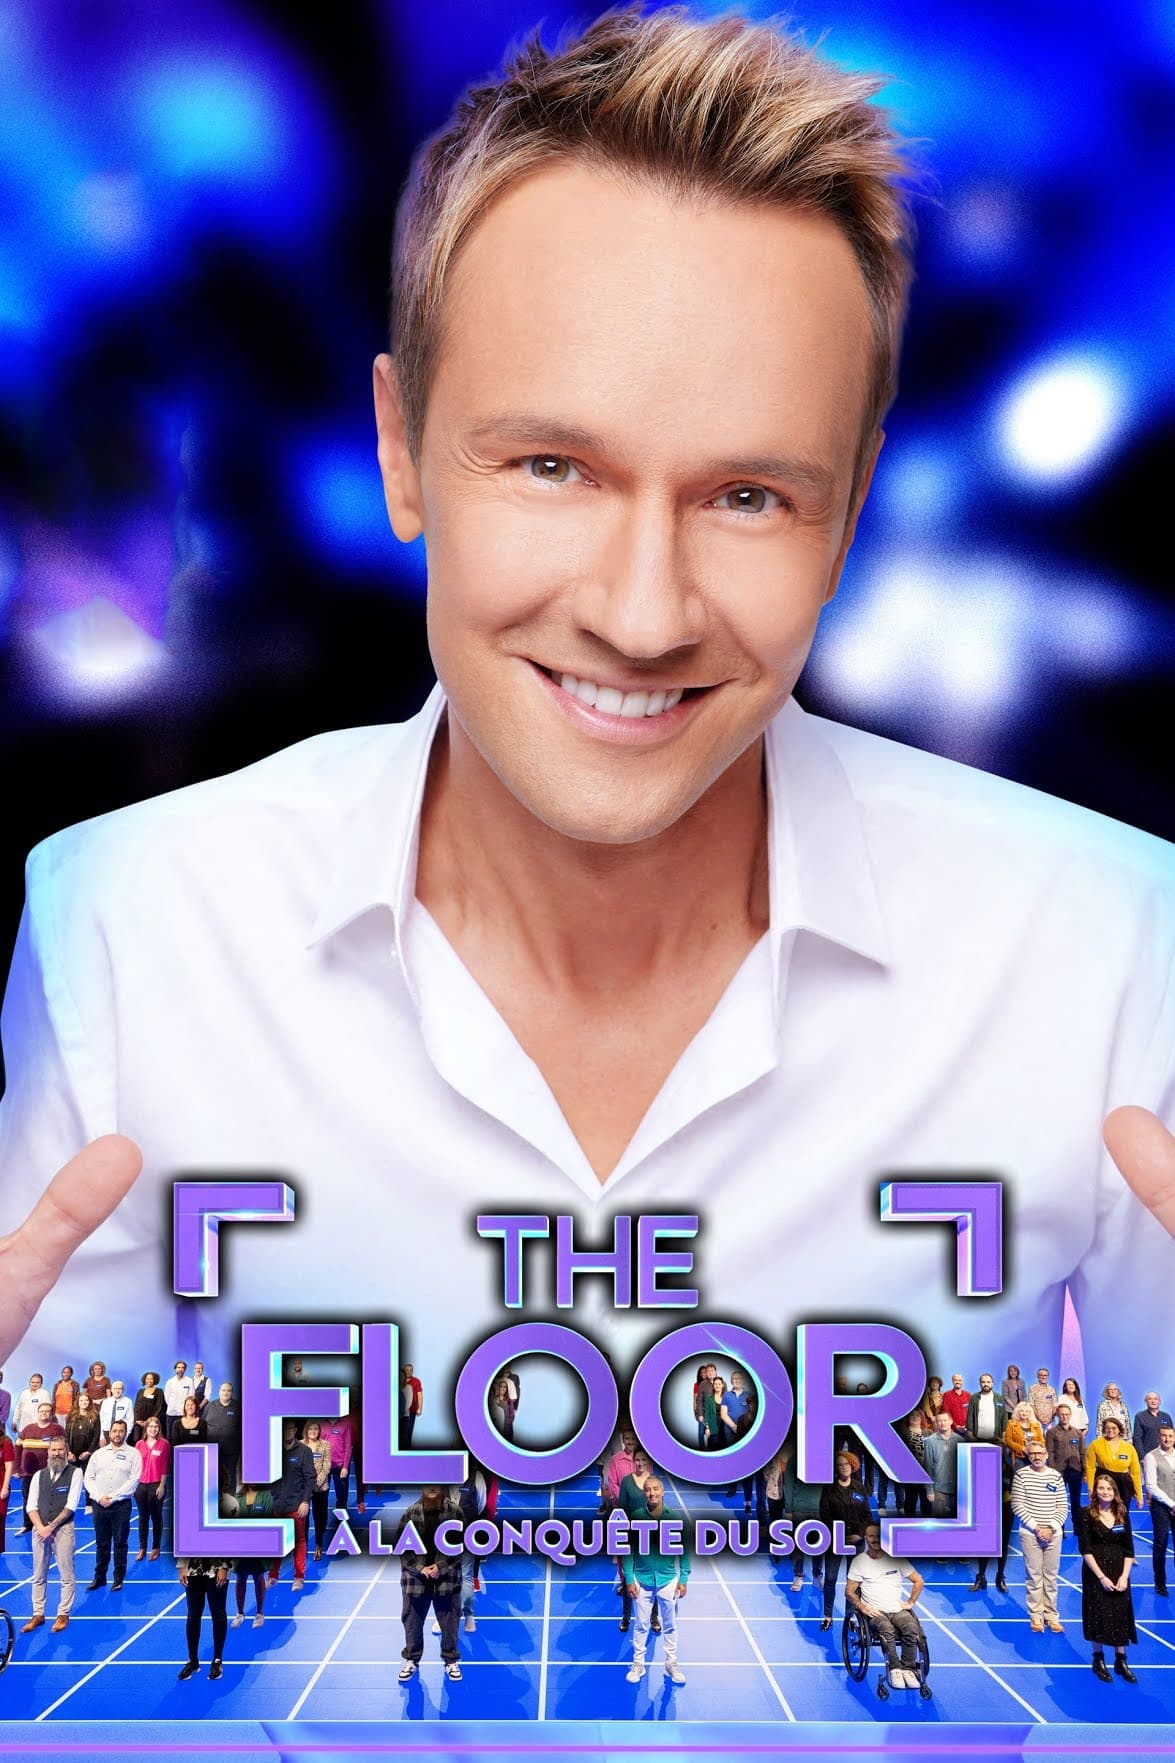 The Floor, à la conquête du sol